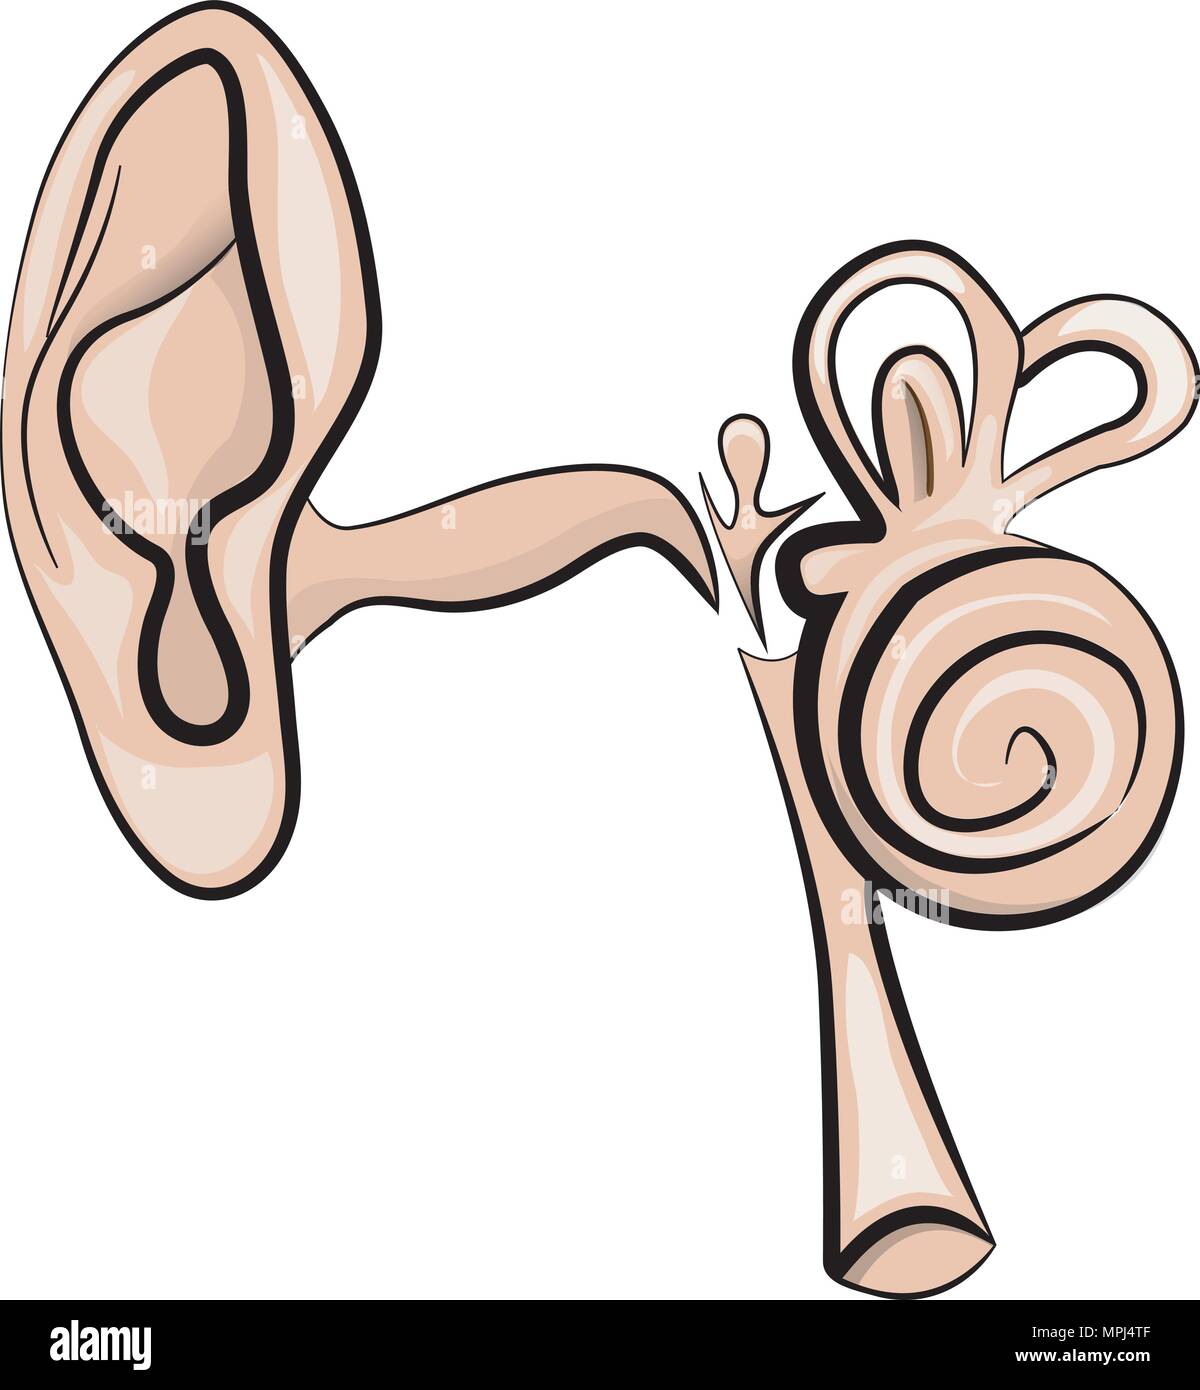 Anatomische Darstellung der Ohr Stock Vektor